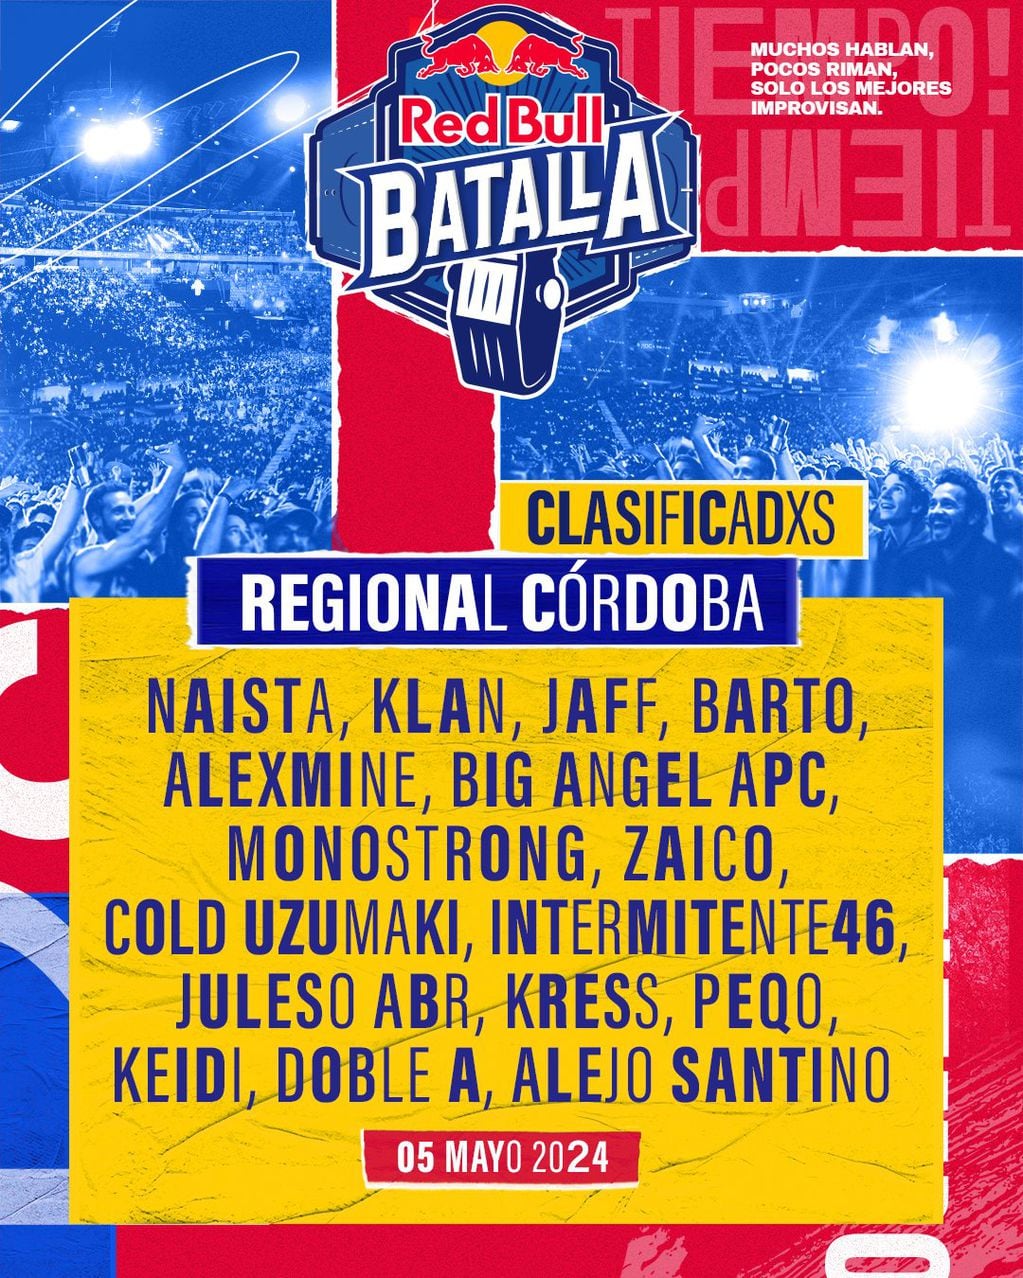 Red Bull Batalla Argentina 2024: lista completa de clasificados, cuándo y dónde serán las regionales